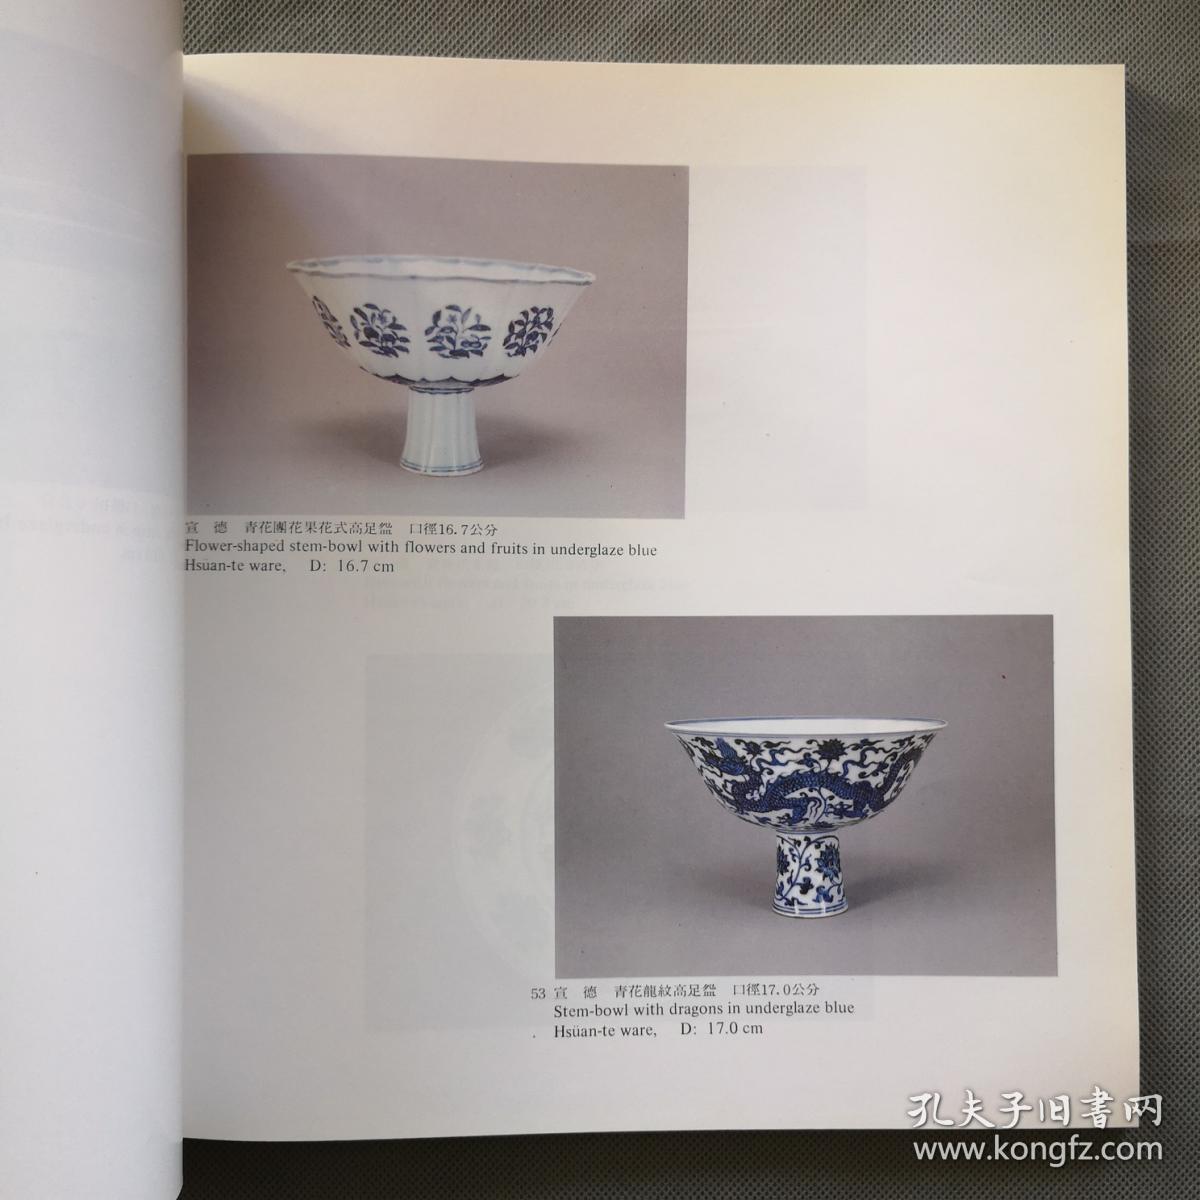 画册《明宣德瓷器特展目录》展品138件  汉英对照  博物院73年版本 16开  具体如图